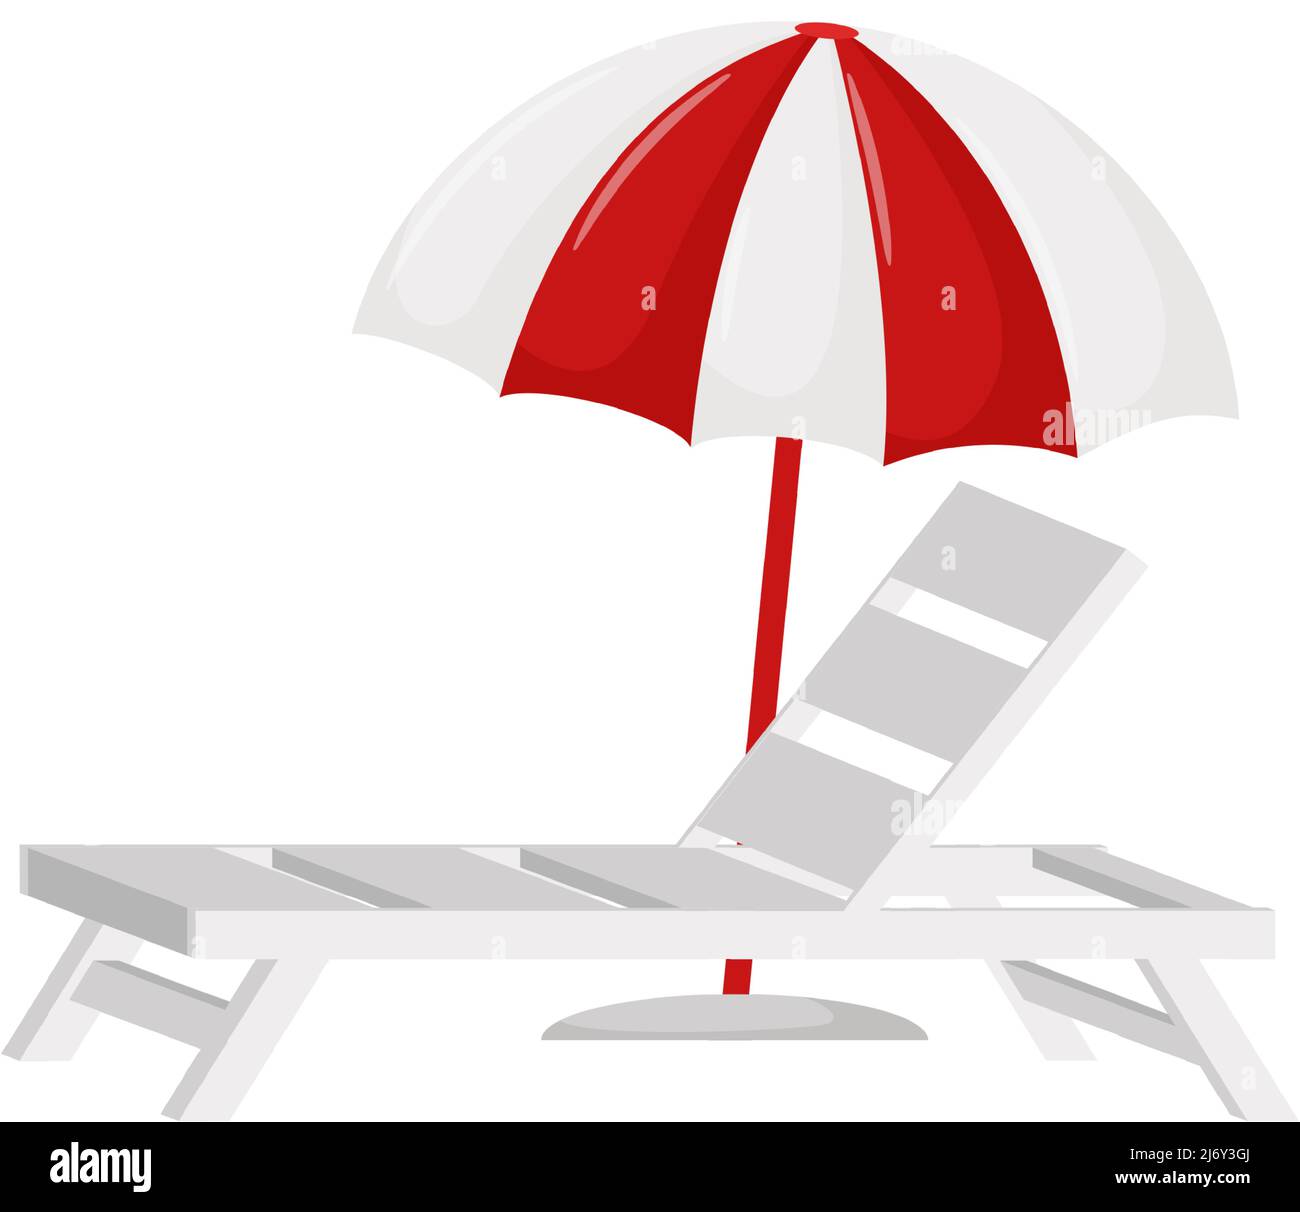 Chaise longue blanche et parasol. Un symbole de l'été. Un élément de design  pour les vacances, l'été, la plage, les vacances. Illustration vectorielle  de couleur plate. Isola Image Vectorielle Stock - Alamy